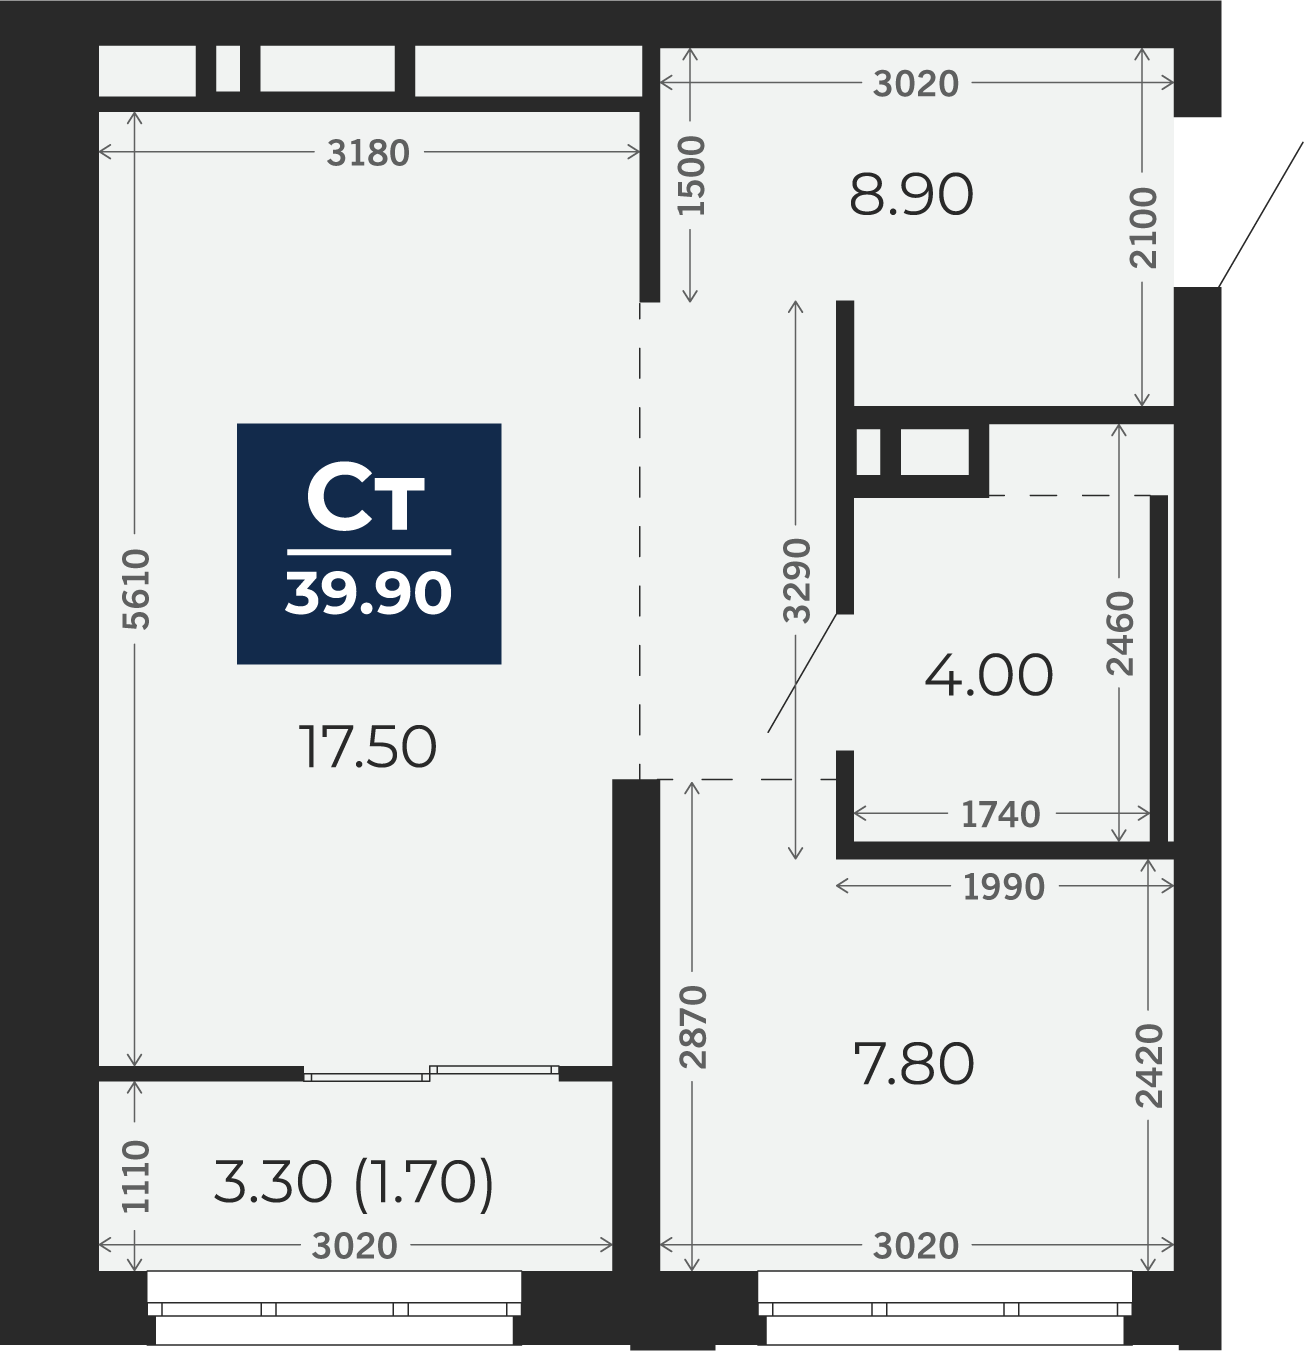 Квартира № 352, Студия, 39.9 кв. м, 18 этаж